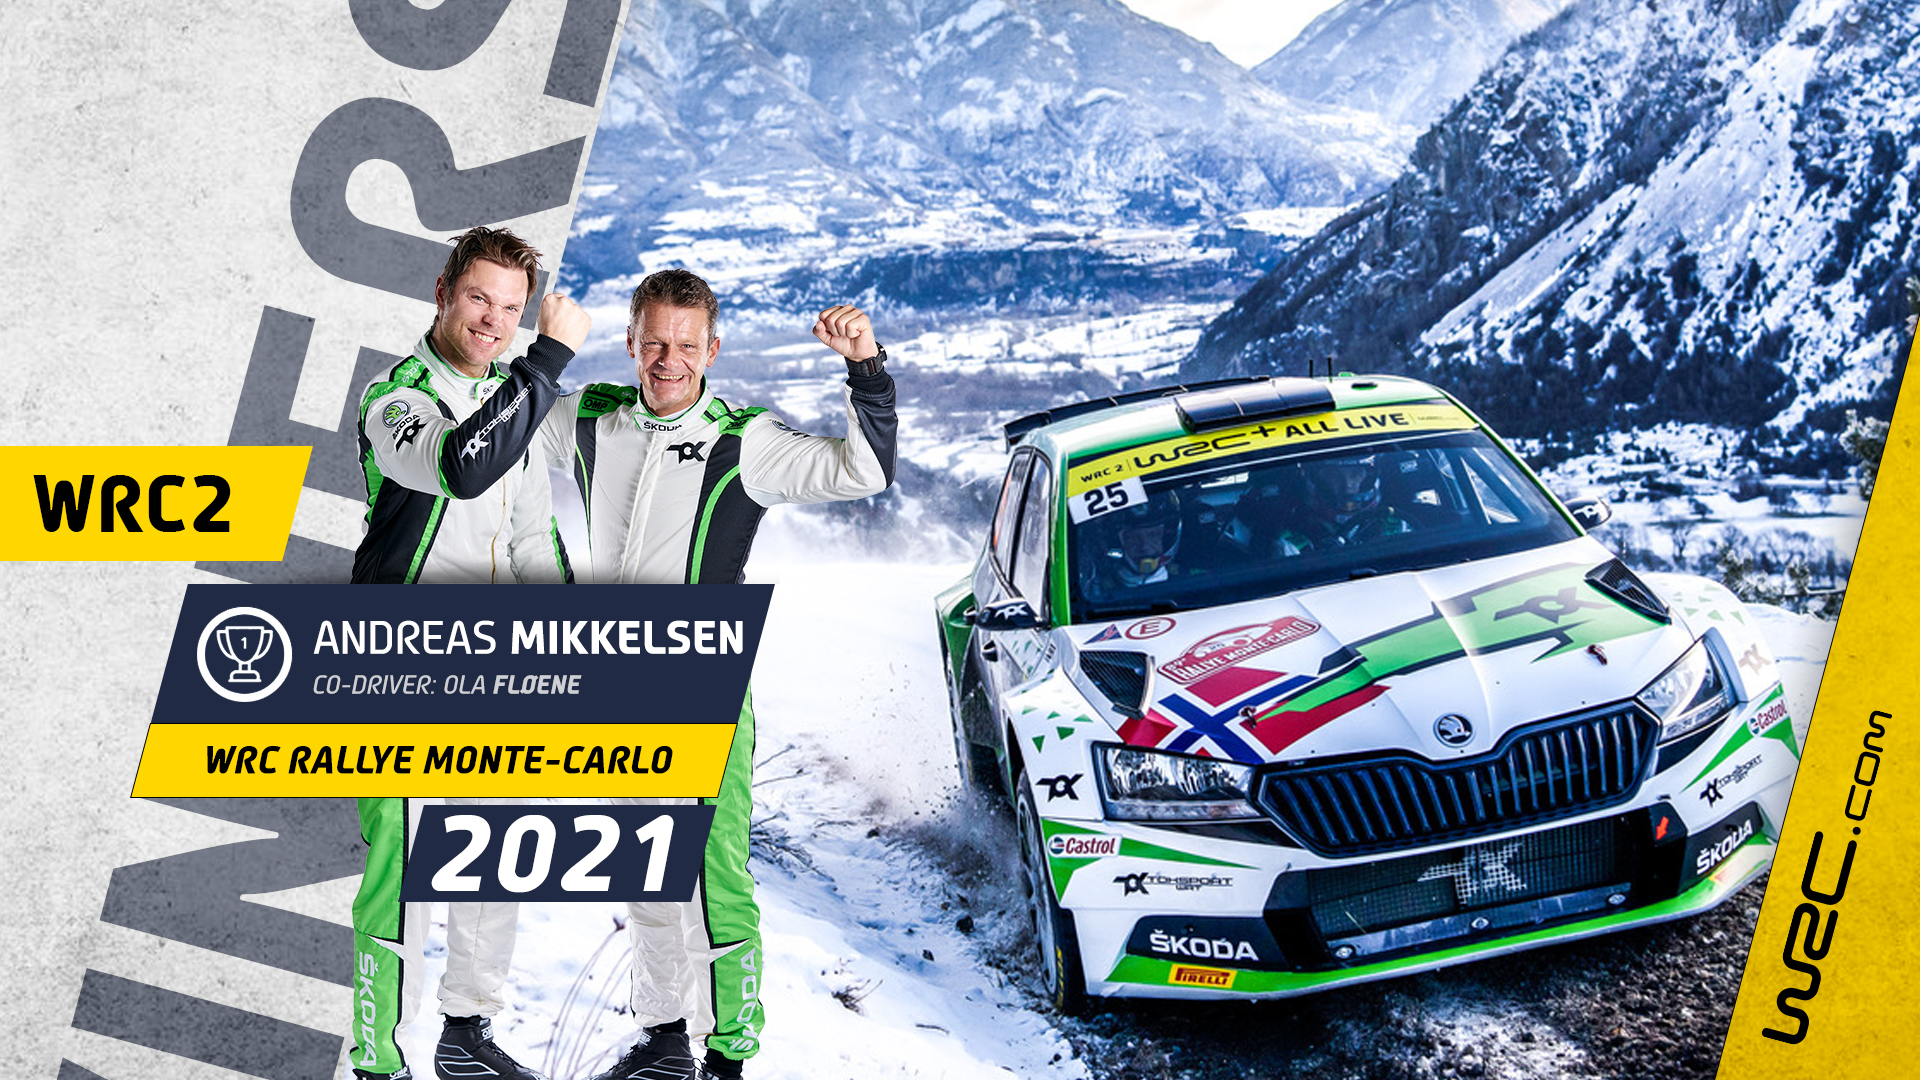 FabiaRally2 - WRC: 89º Rallye Automobile de Monte-Carlo [18-24 Enero] - Página 15 230121_winner-WRC2-Mikkelsen-16_9